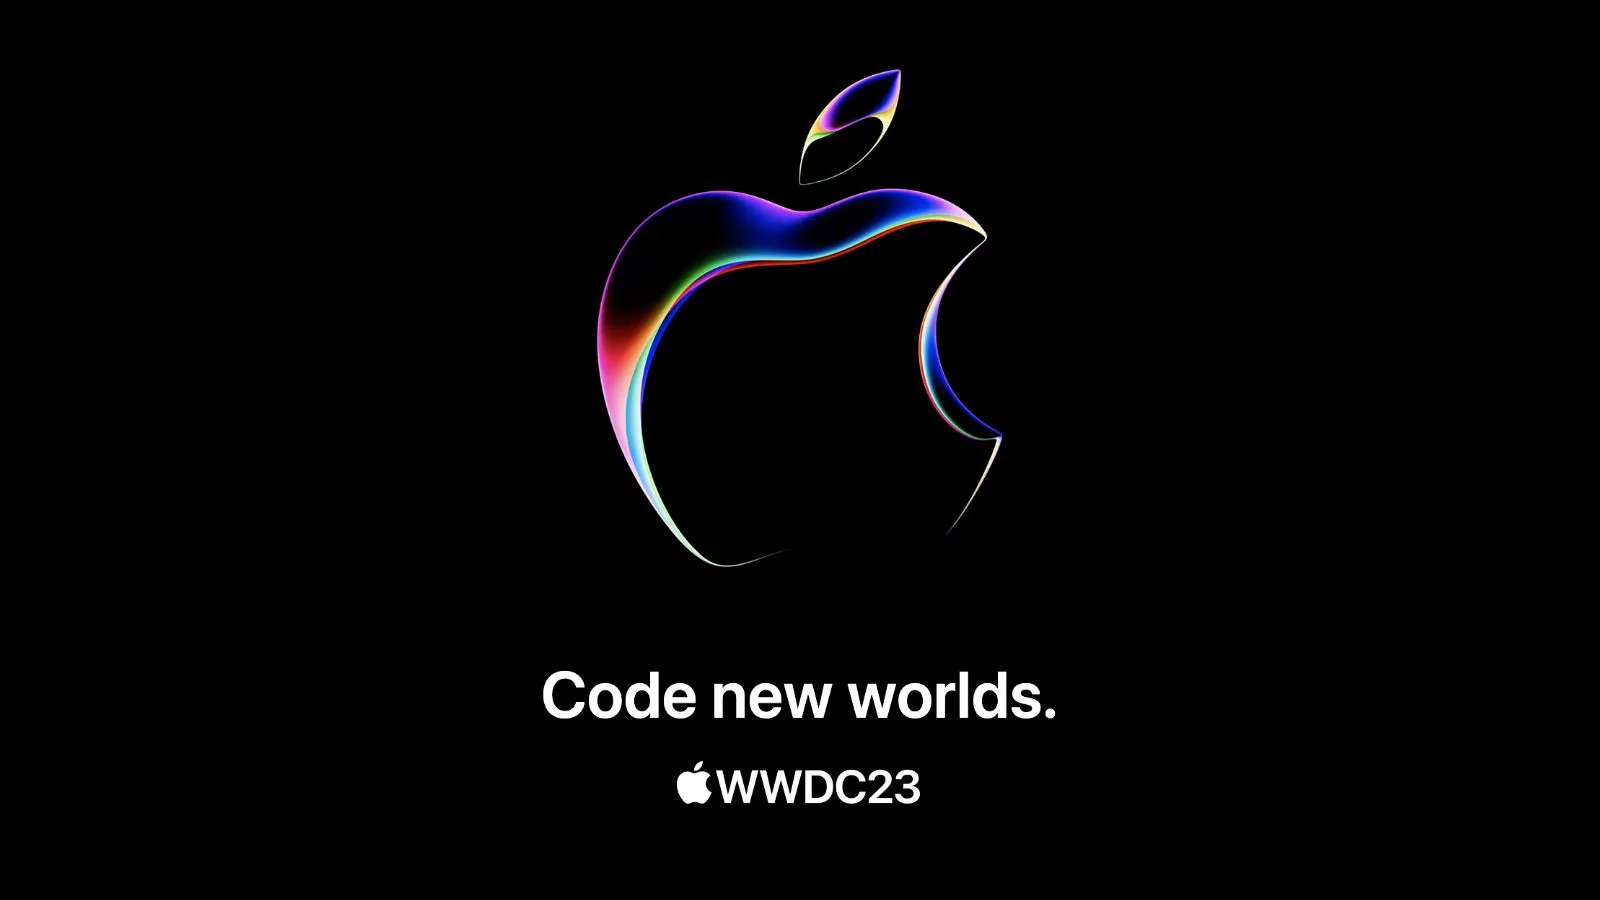 Apple hé lộ về “kỉ nguyên mới” và nhắc đến “lập trình thế giới mới”